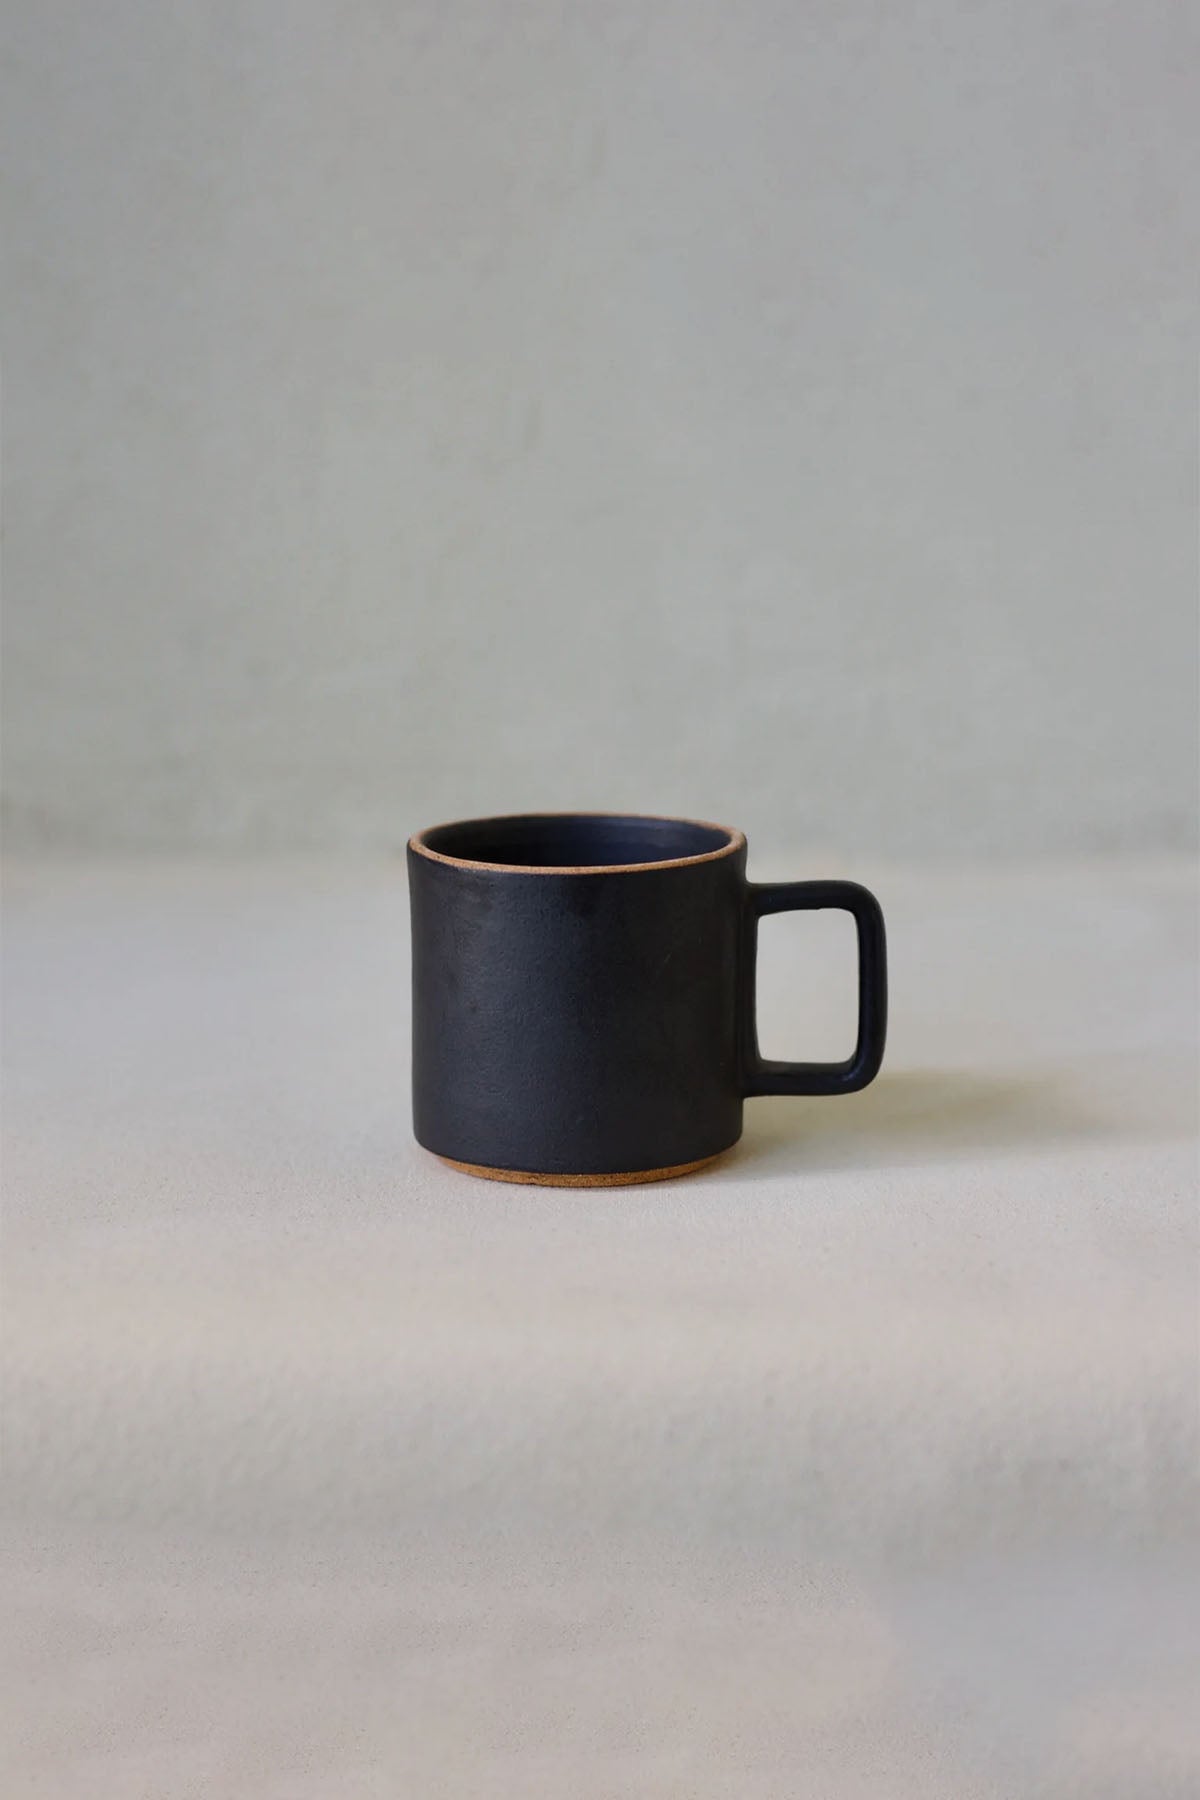 Cisco & The Sun Rami Ceramic Coffee & Tea Cup - Marz DesignsCisco & The Sun